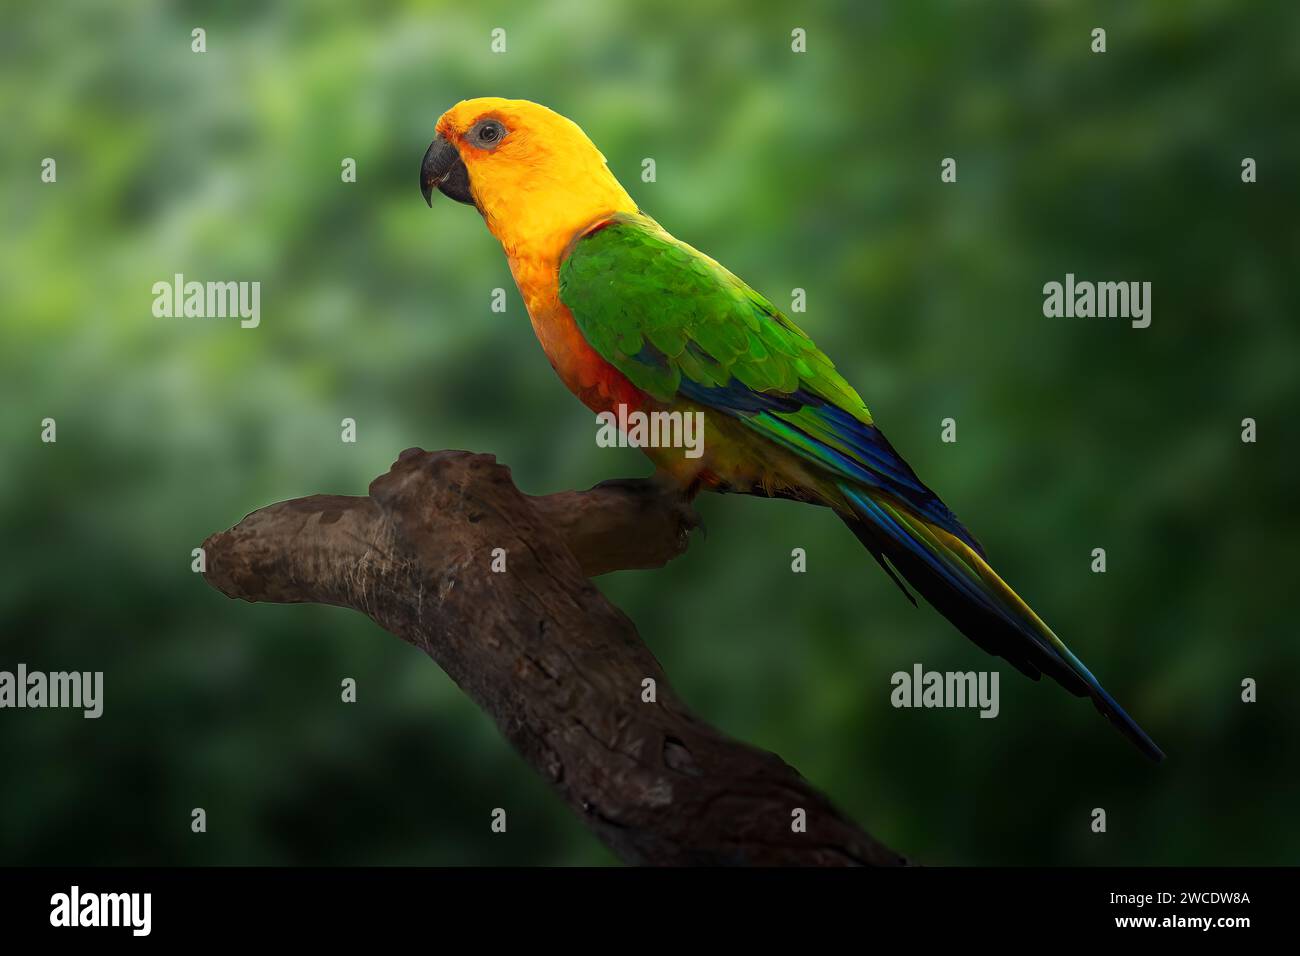 Jandaya Parakeet bird (Aratinga jandaya) Stock Photo